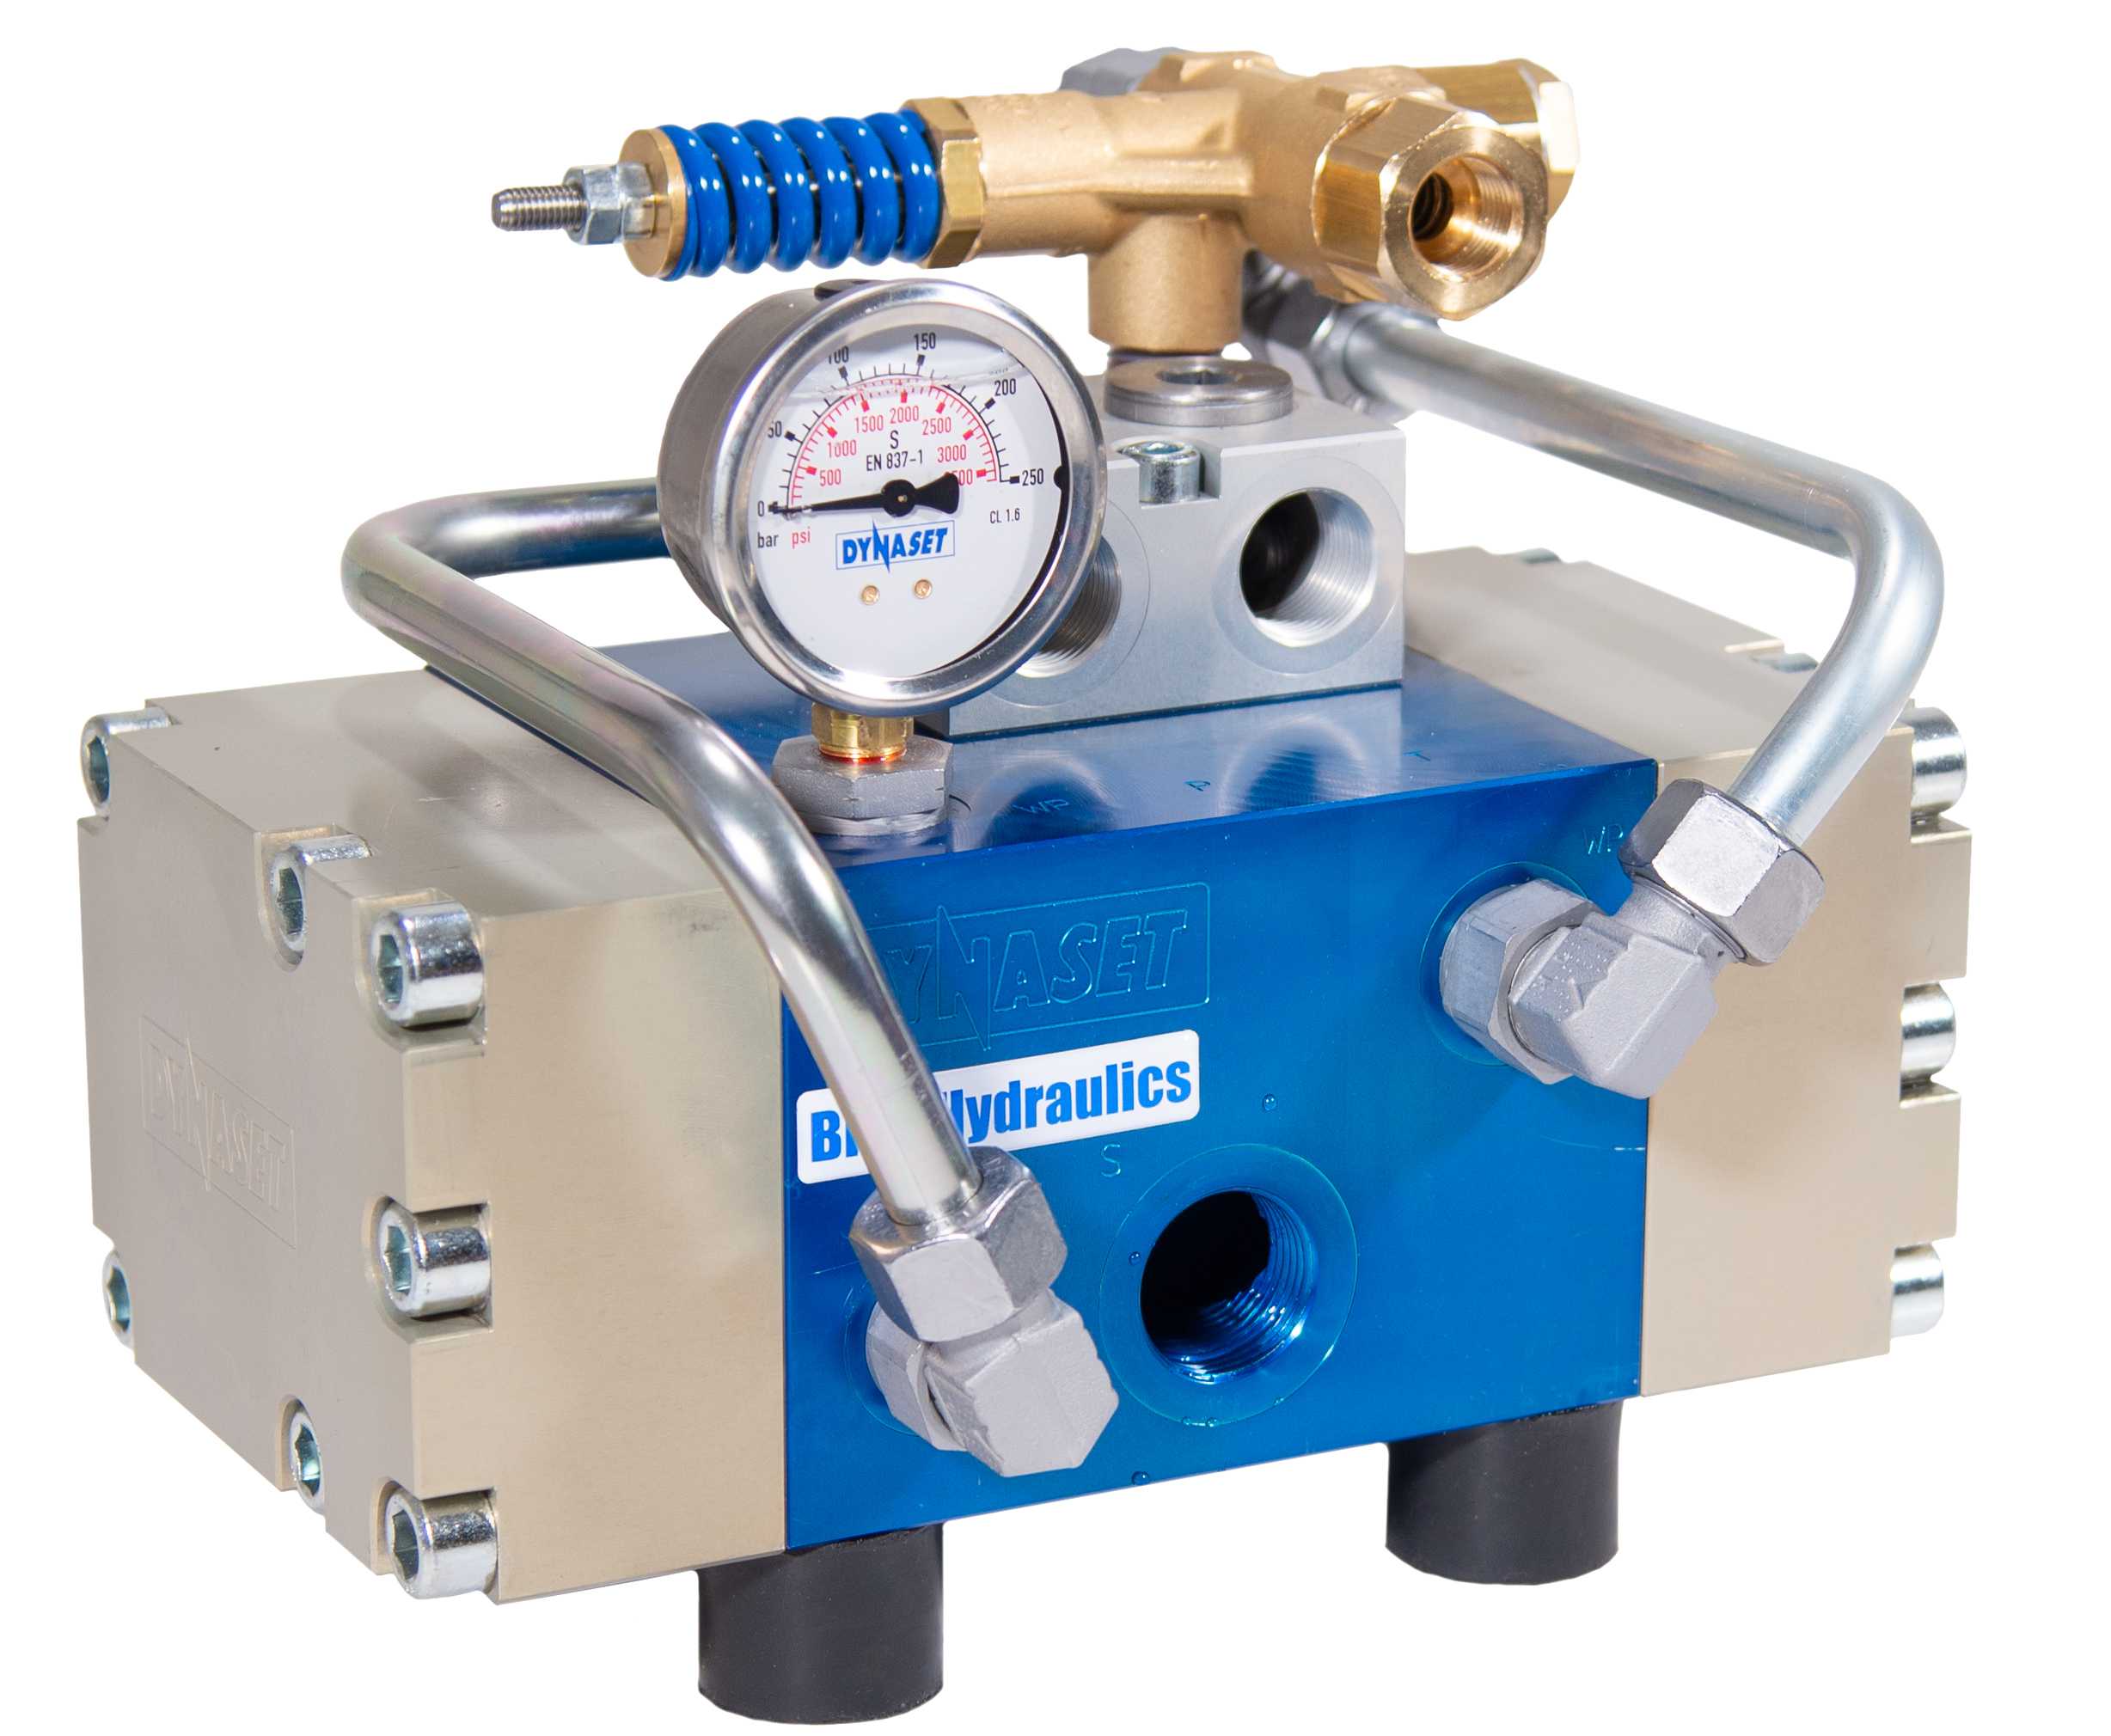 HPW220 - Hydraulisch angetriebene Wasser-Hochdruckpumpe, 50 L/min. bei 220 bar